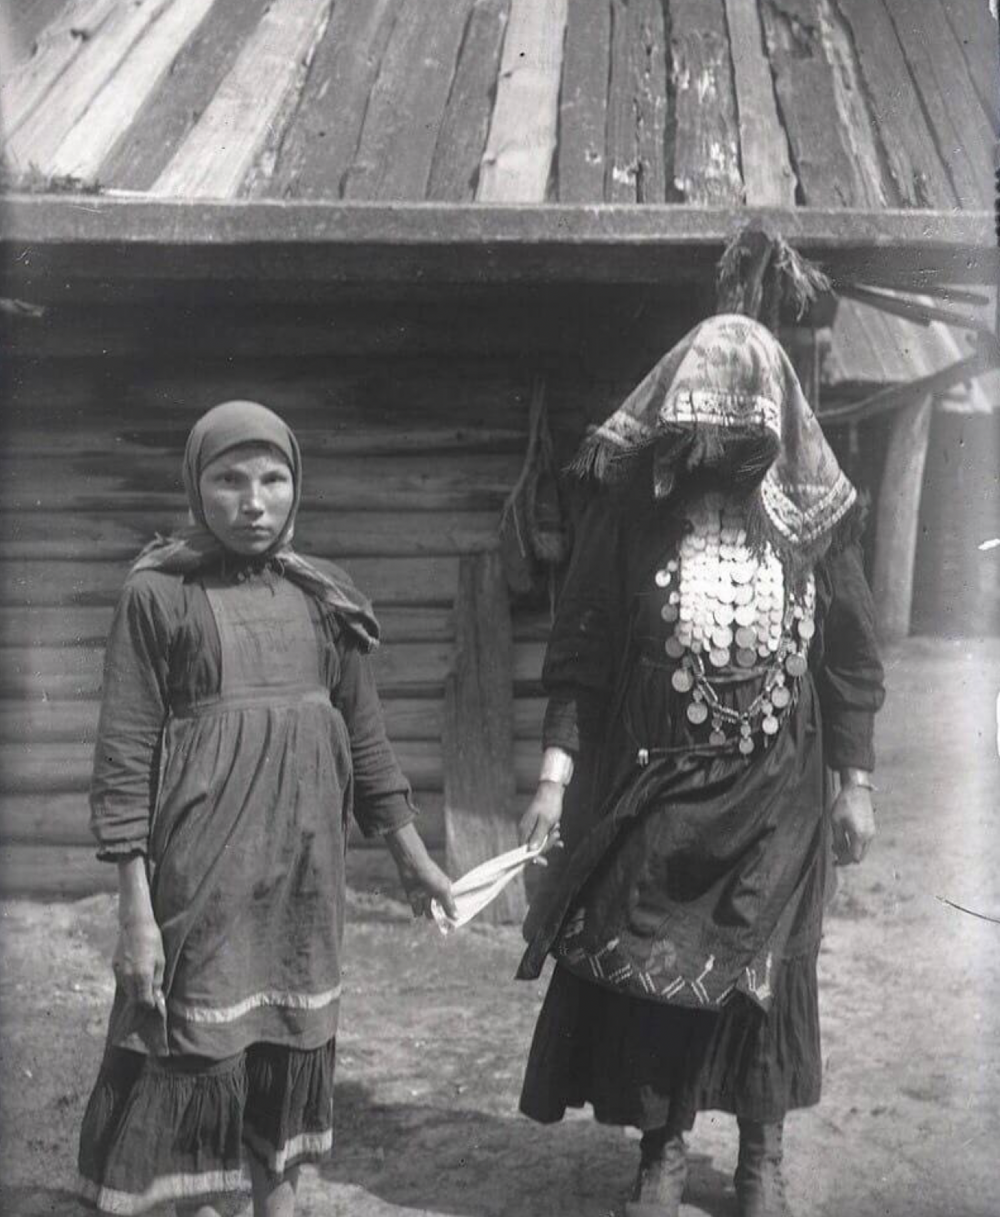 6. Сестра жениха ведет невесту за платок на речку для обливания водой согласно свадебному обряду, Удмуртия, 1930 год